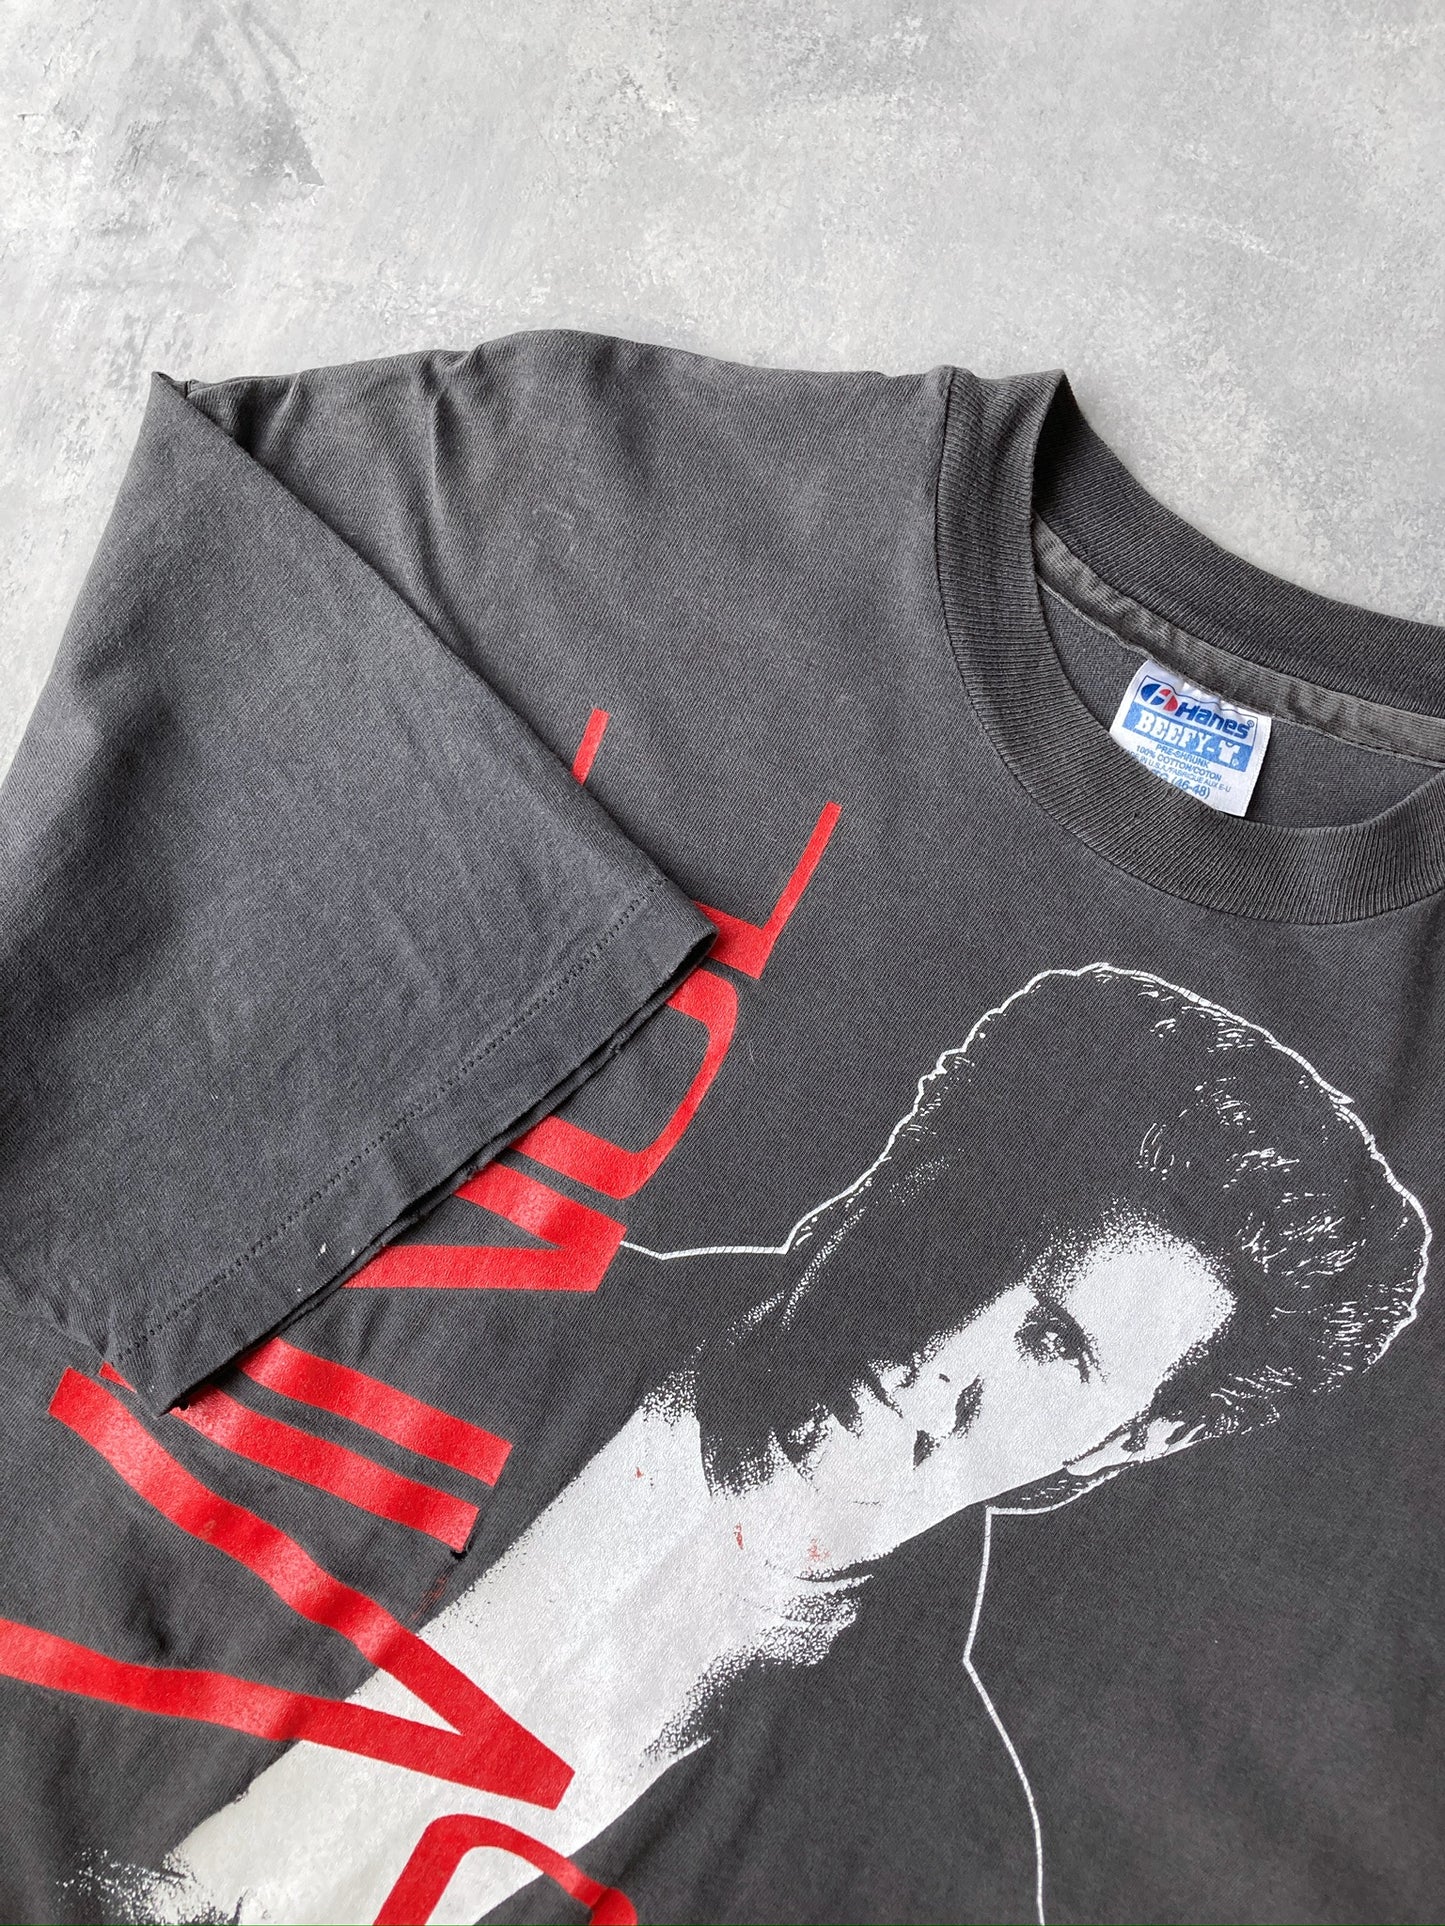 Vince Gill Tour T-Shirt '92 - XL